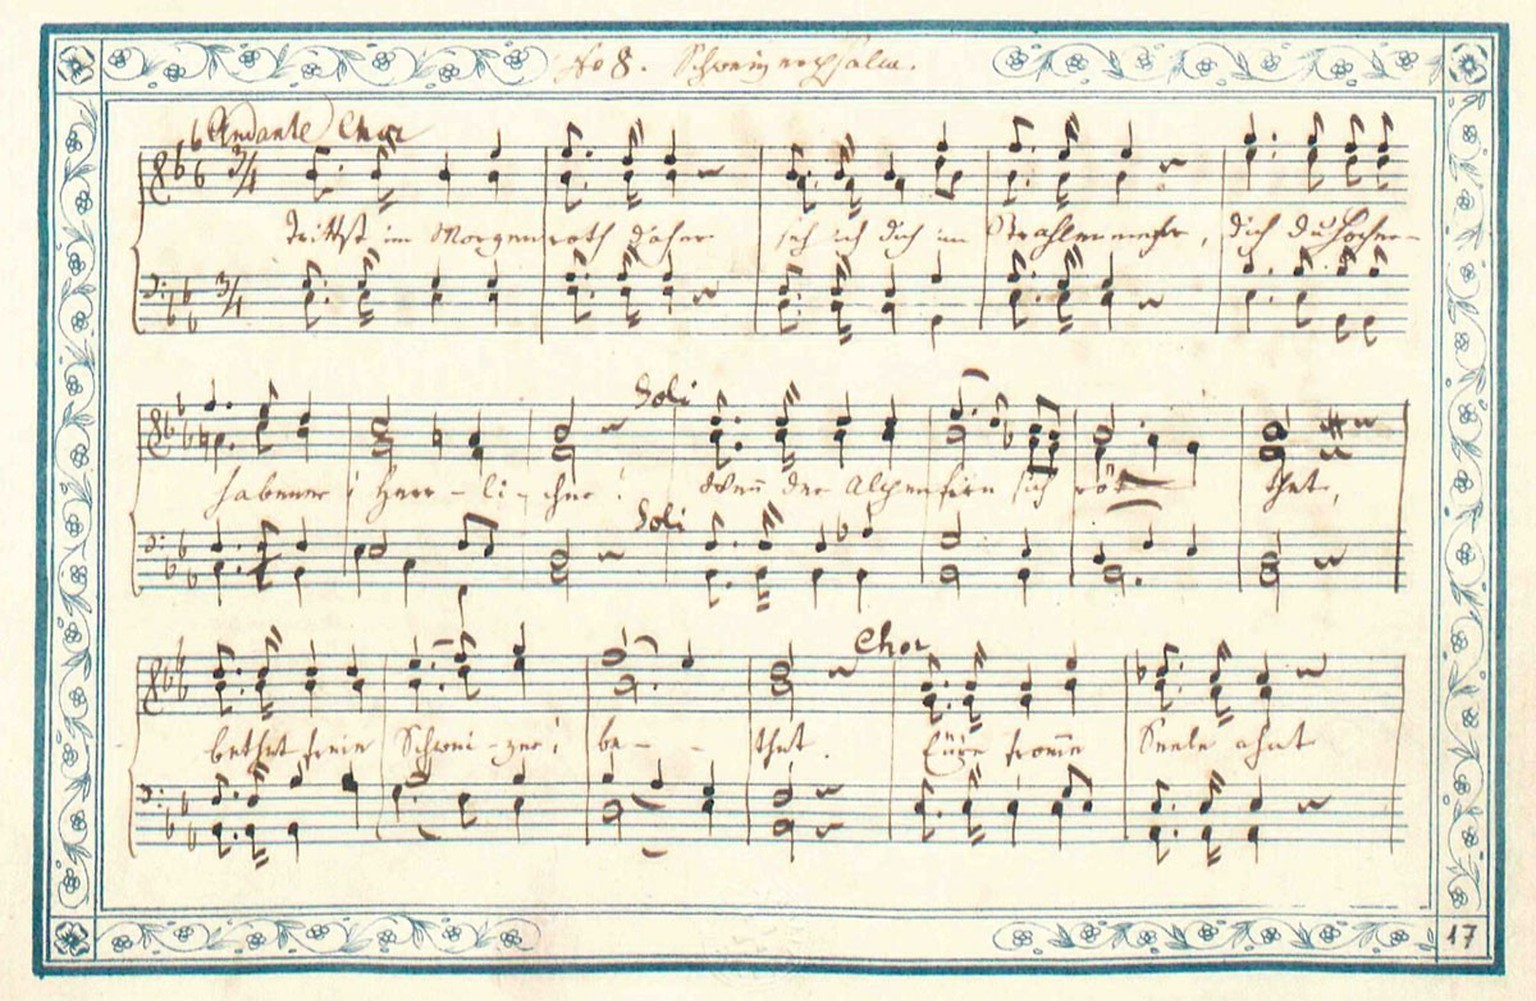 Un chant destiné à revêtir une importance nationale. Manuscrit original du «Cantique suisse», 1841.
https://permalink.snl.ch/bib/sz991017980505303976